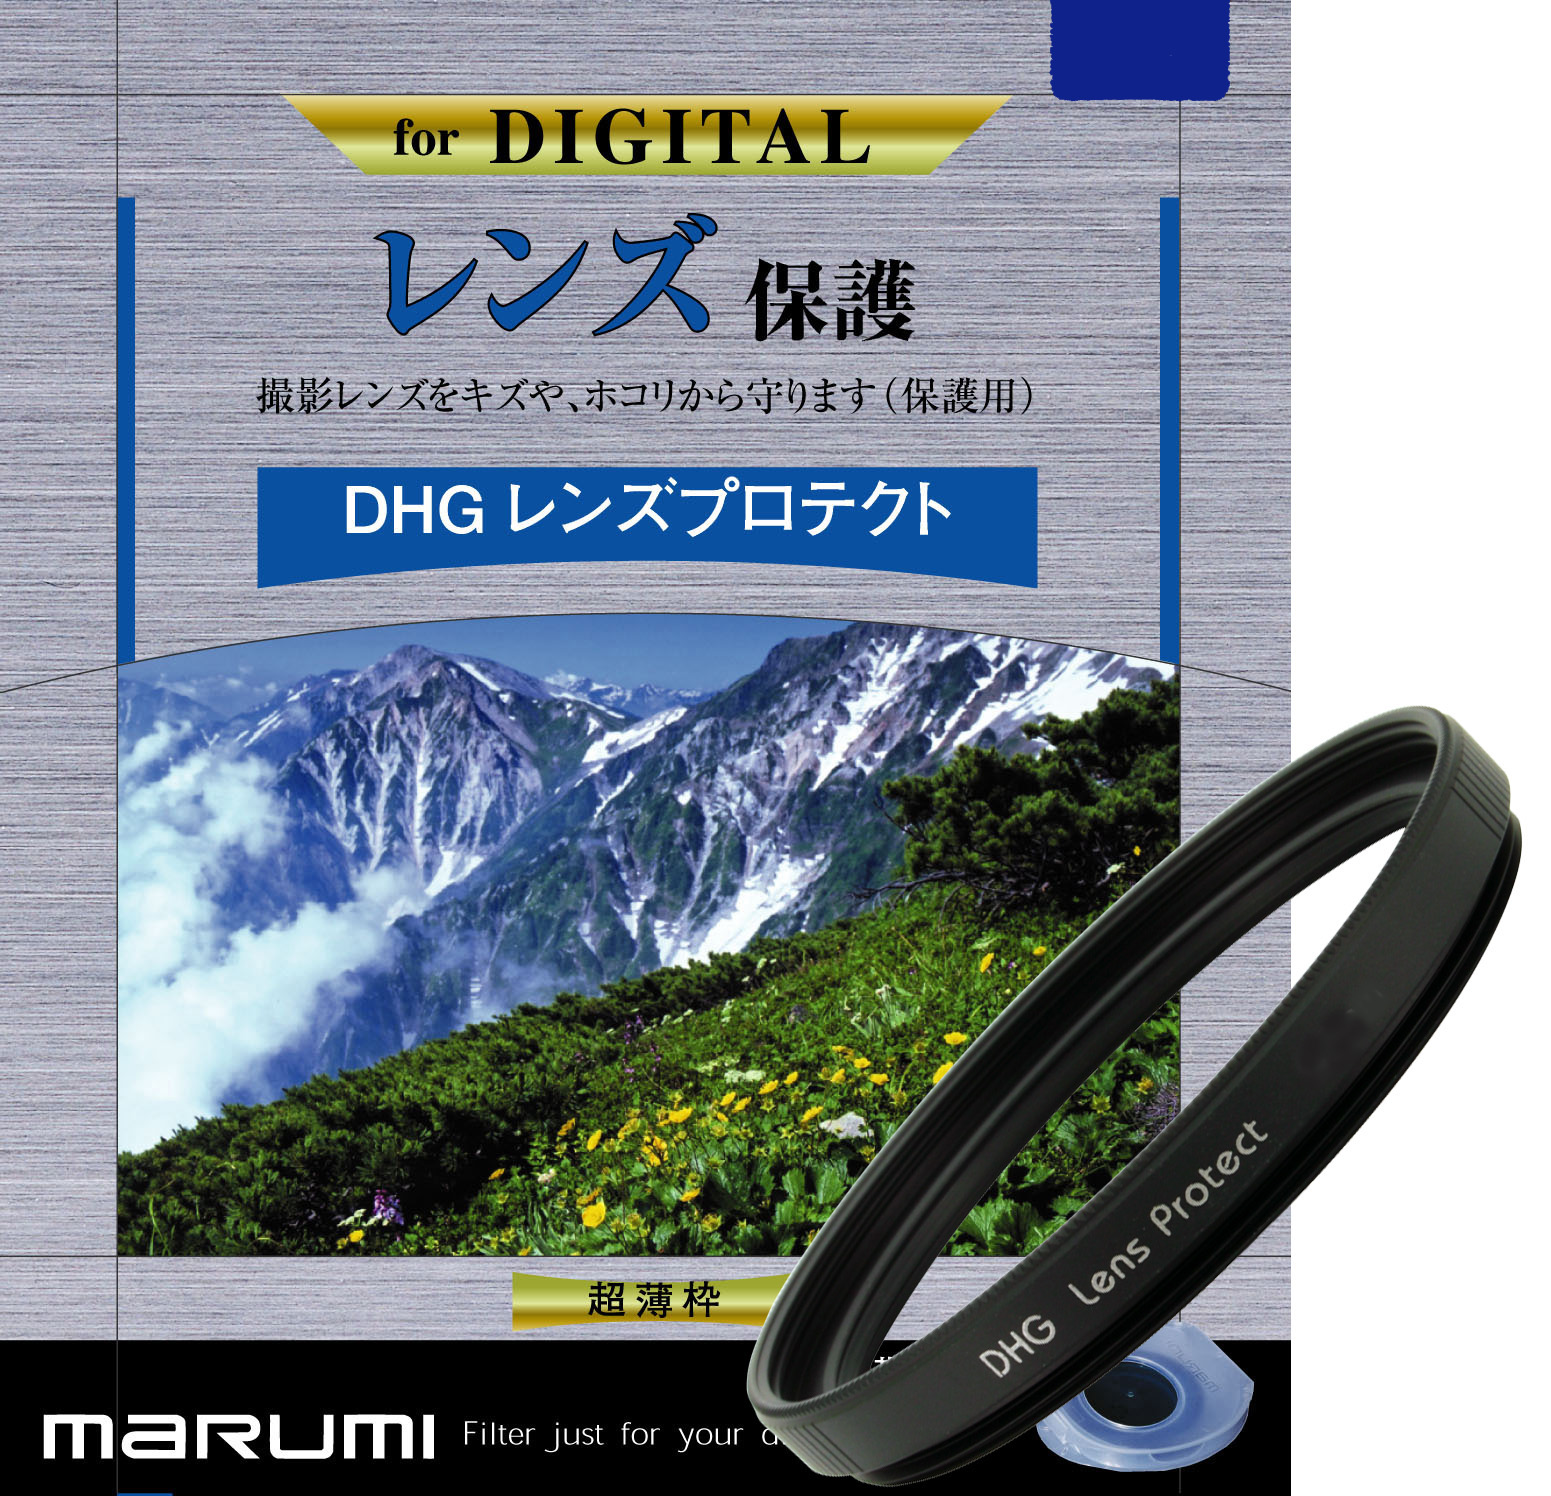 マルミ  DHG レンズプロテクト 46mm [プロテクター] MARUMI